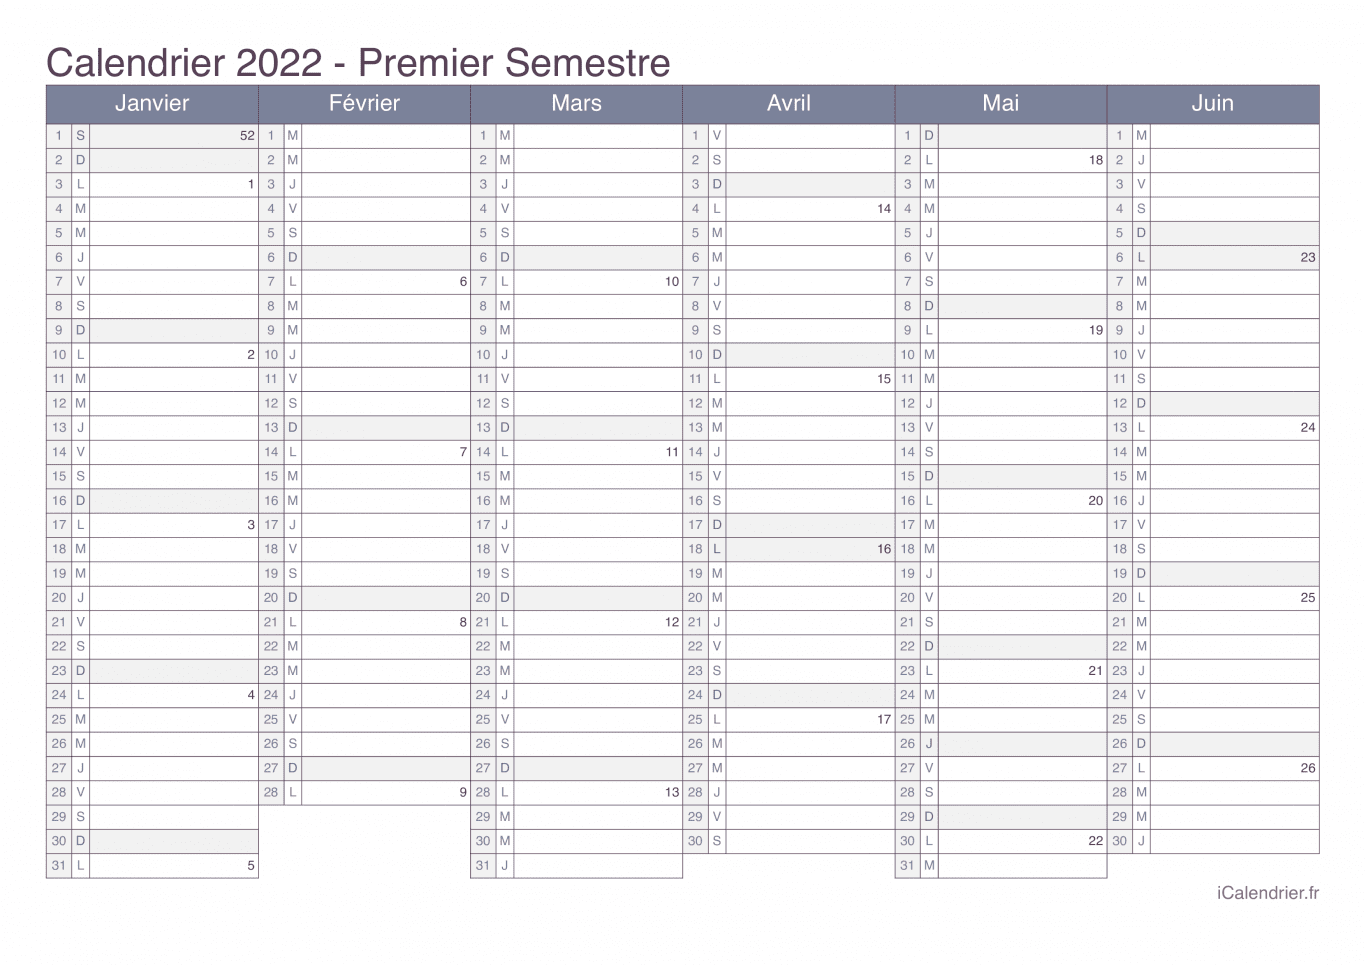 Calendrier par semestre avec numéros des semaines 2022 - Office